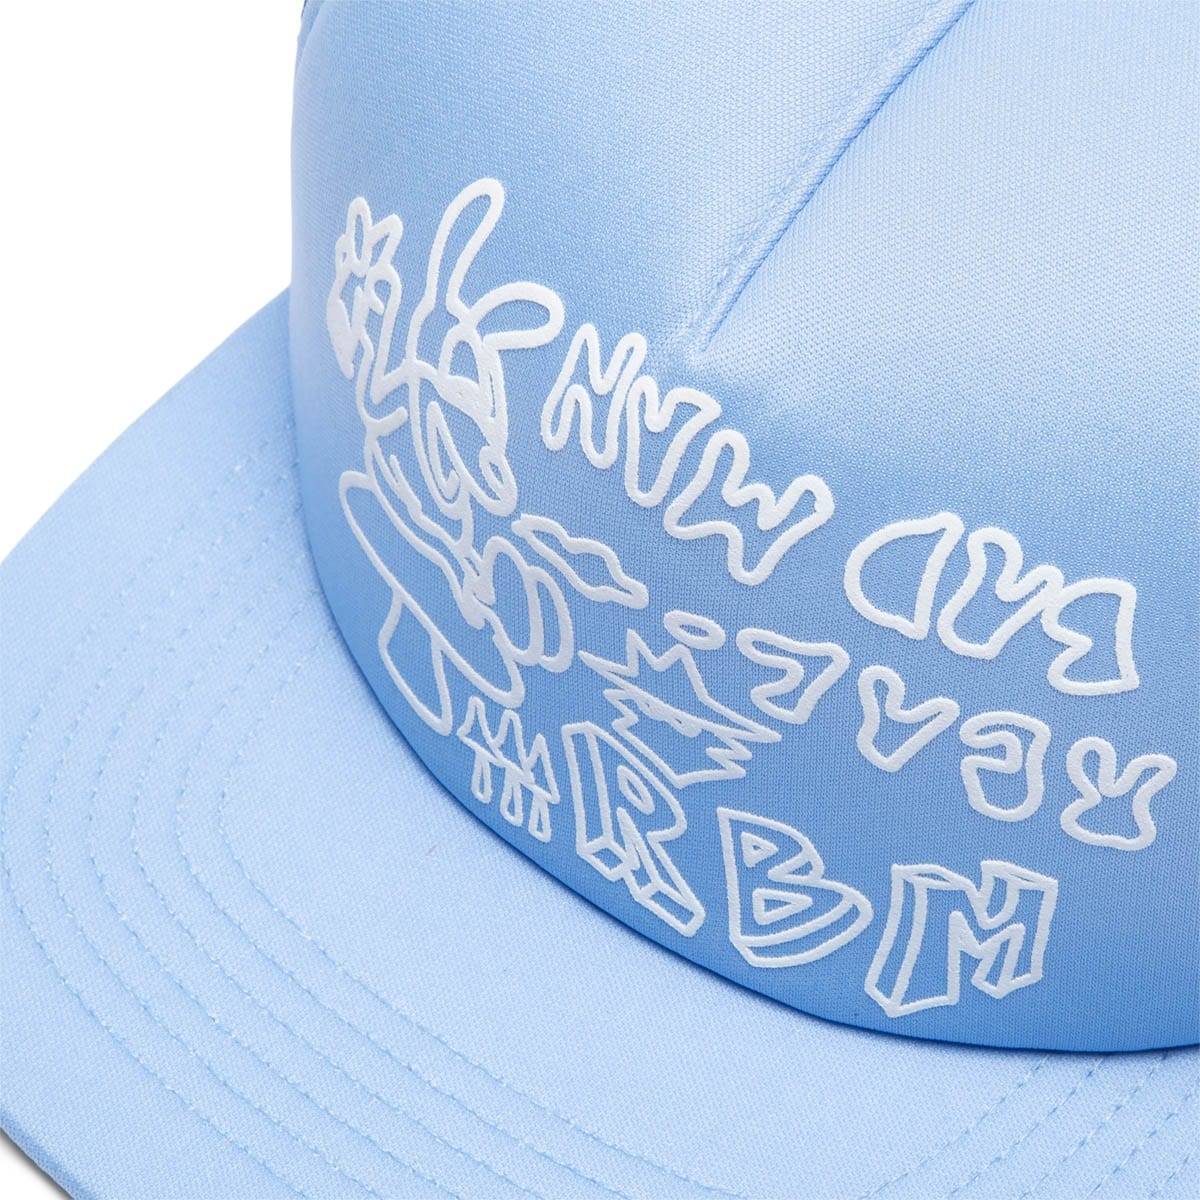 Buy BM SKY BLUE CAP at